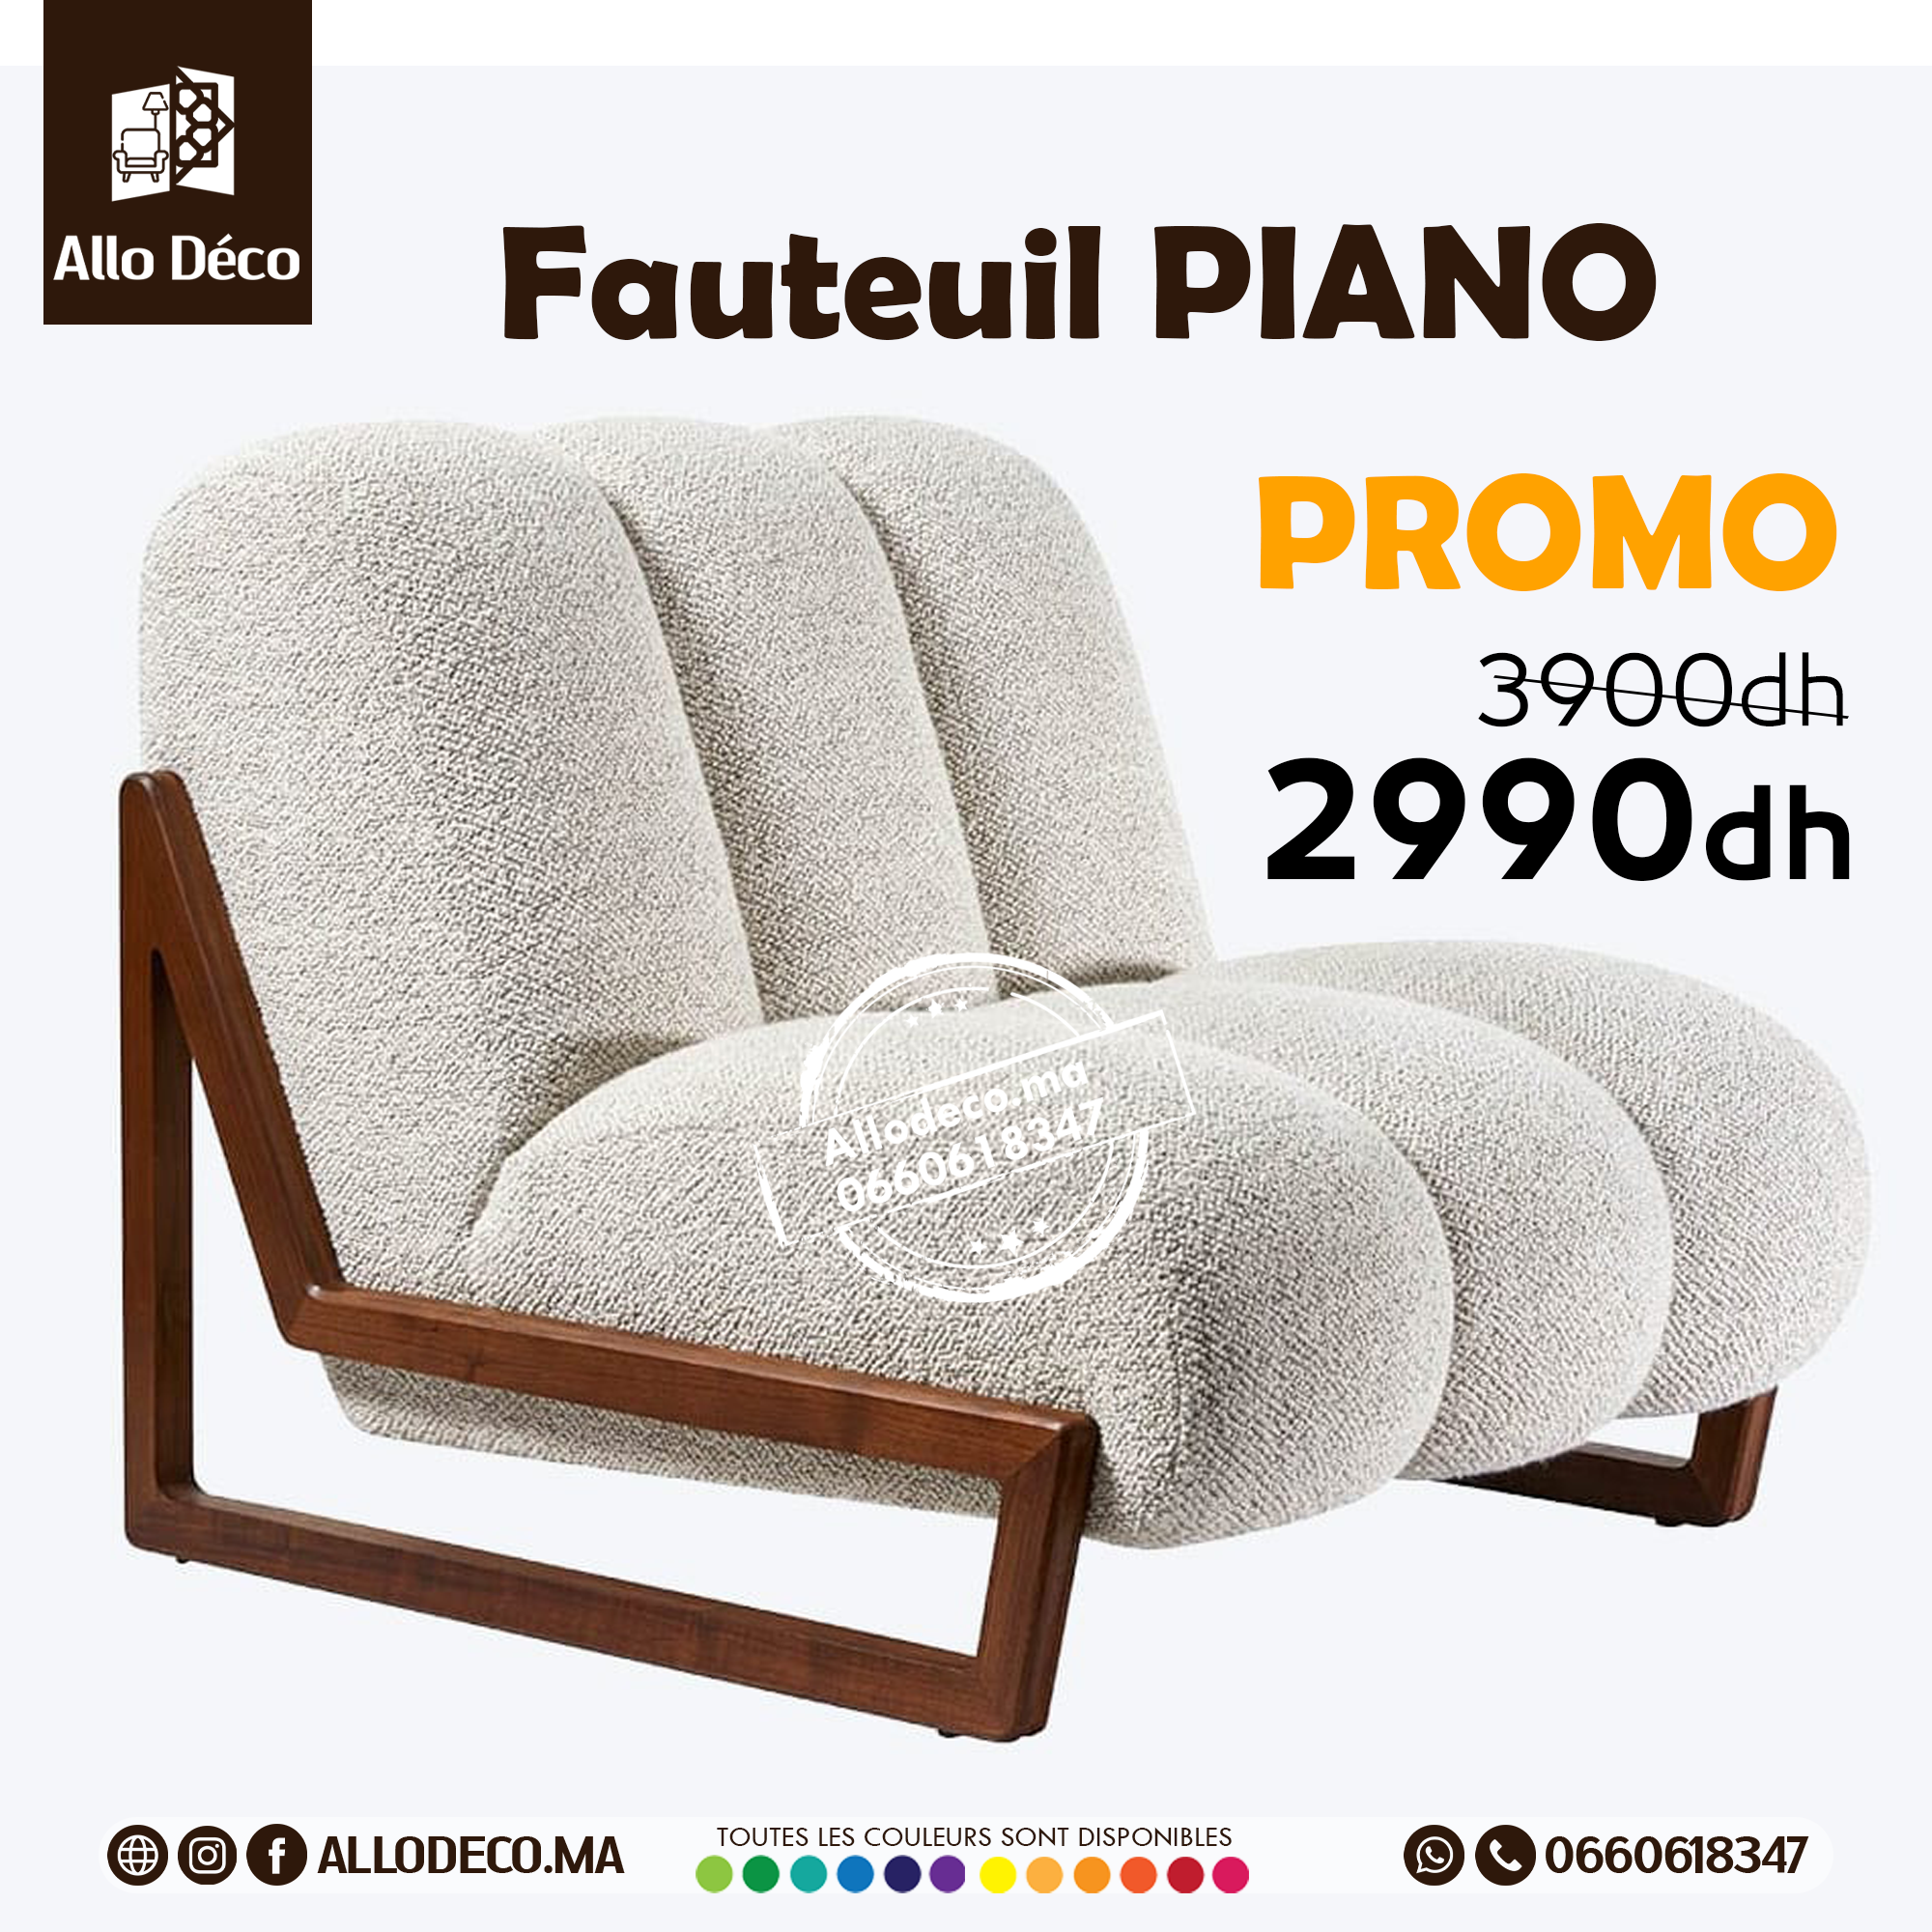 Fauteuil PIANO - allodeco Maroc